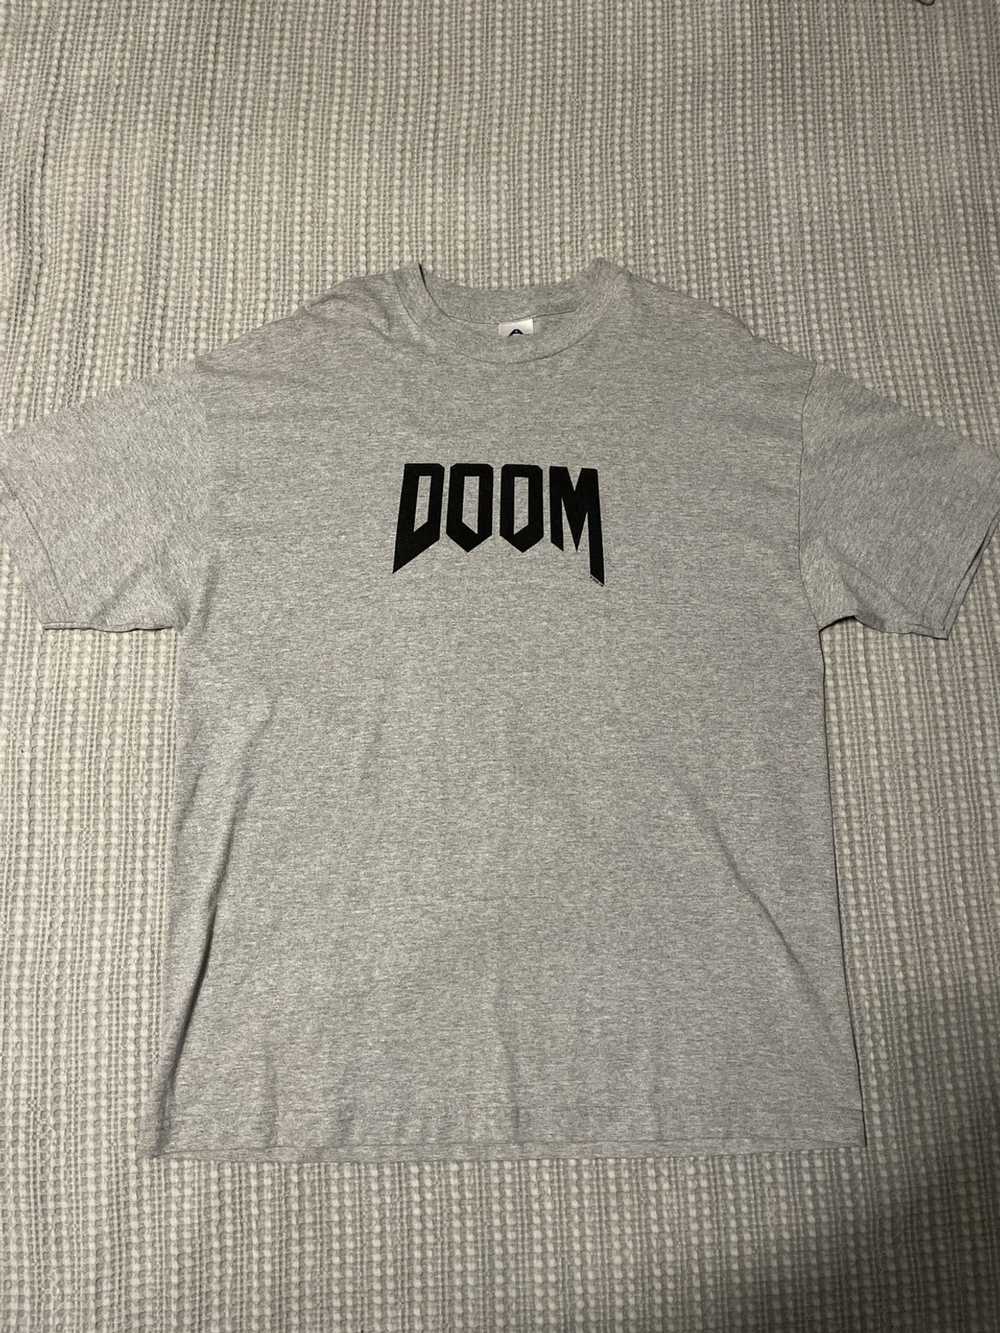 Vintage Doom Movie 2005 Y2K Vintage Shirt - image 1